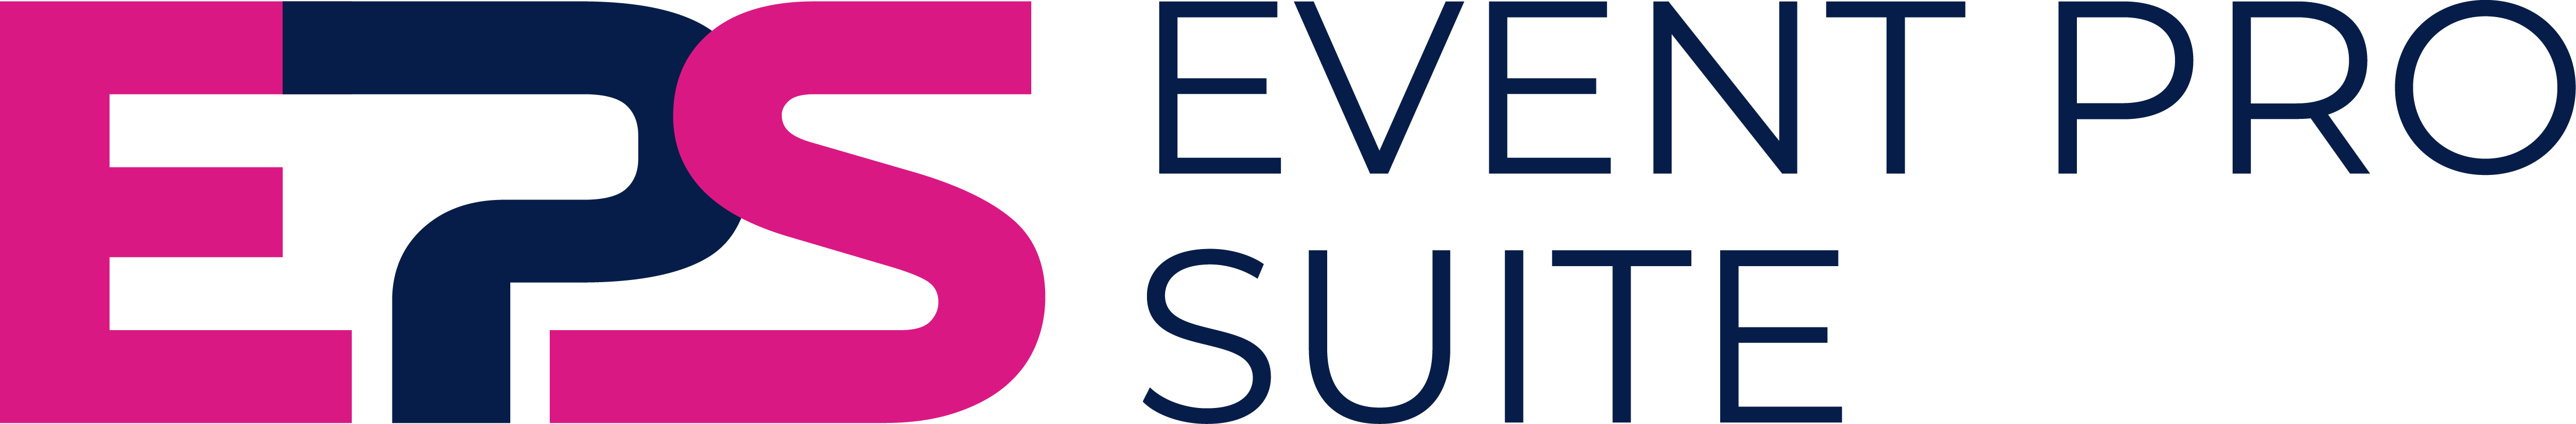 Event Pro Sute Logo